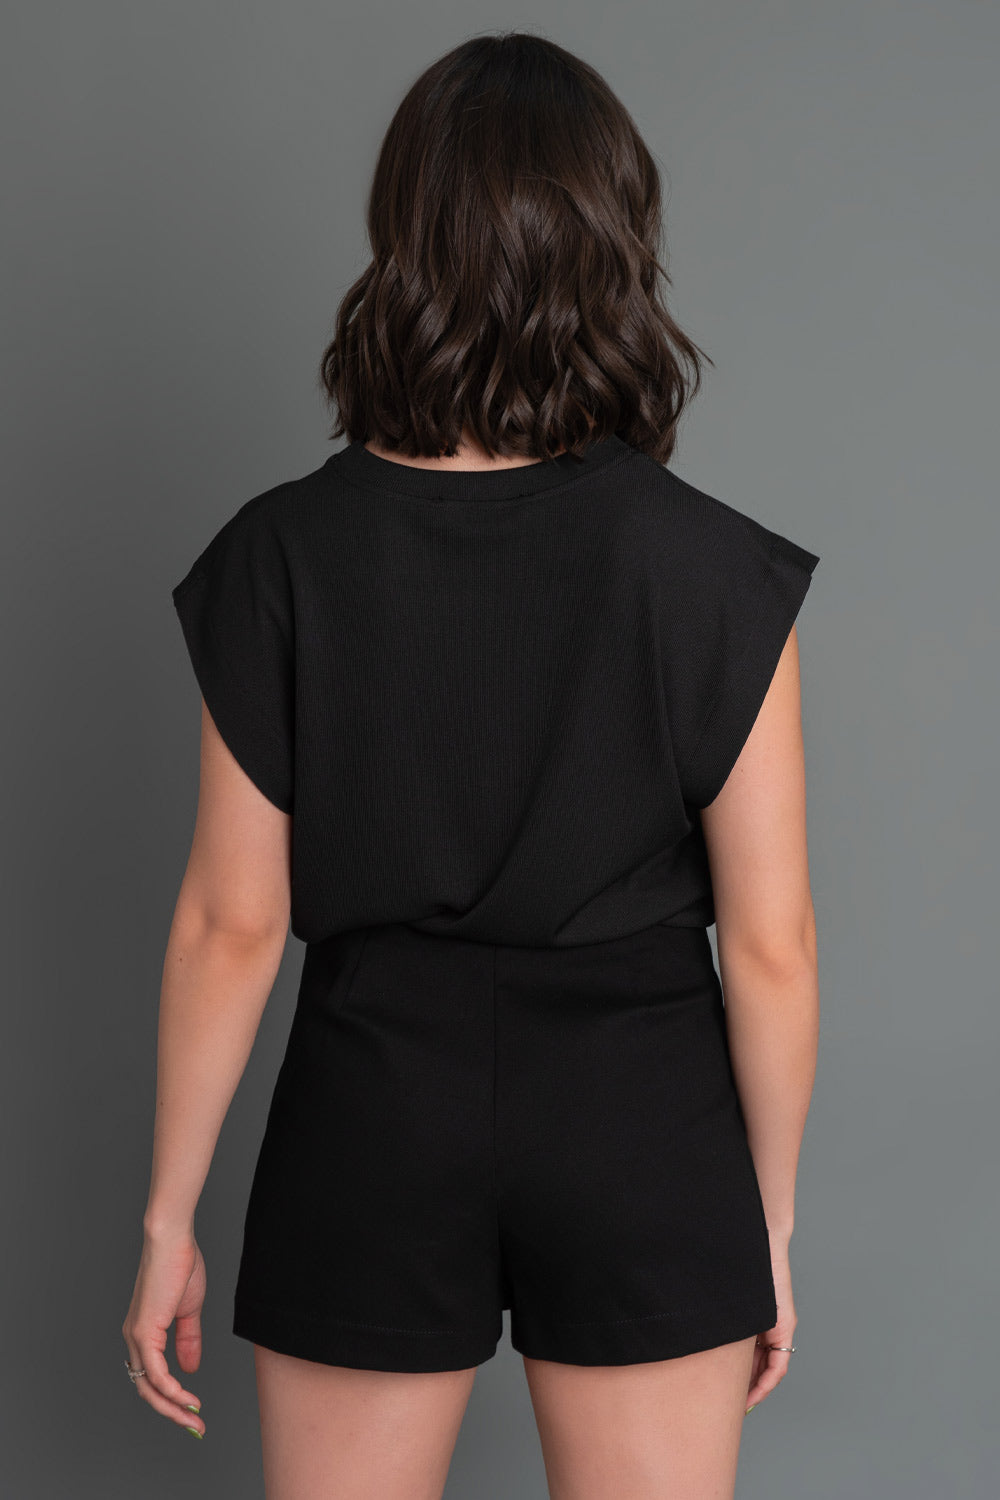 Falda short corto de fit recto, cintura alta, bolsillos decorativos frontales con cremallera en contraste y cierre lateral con cremallera oculta.